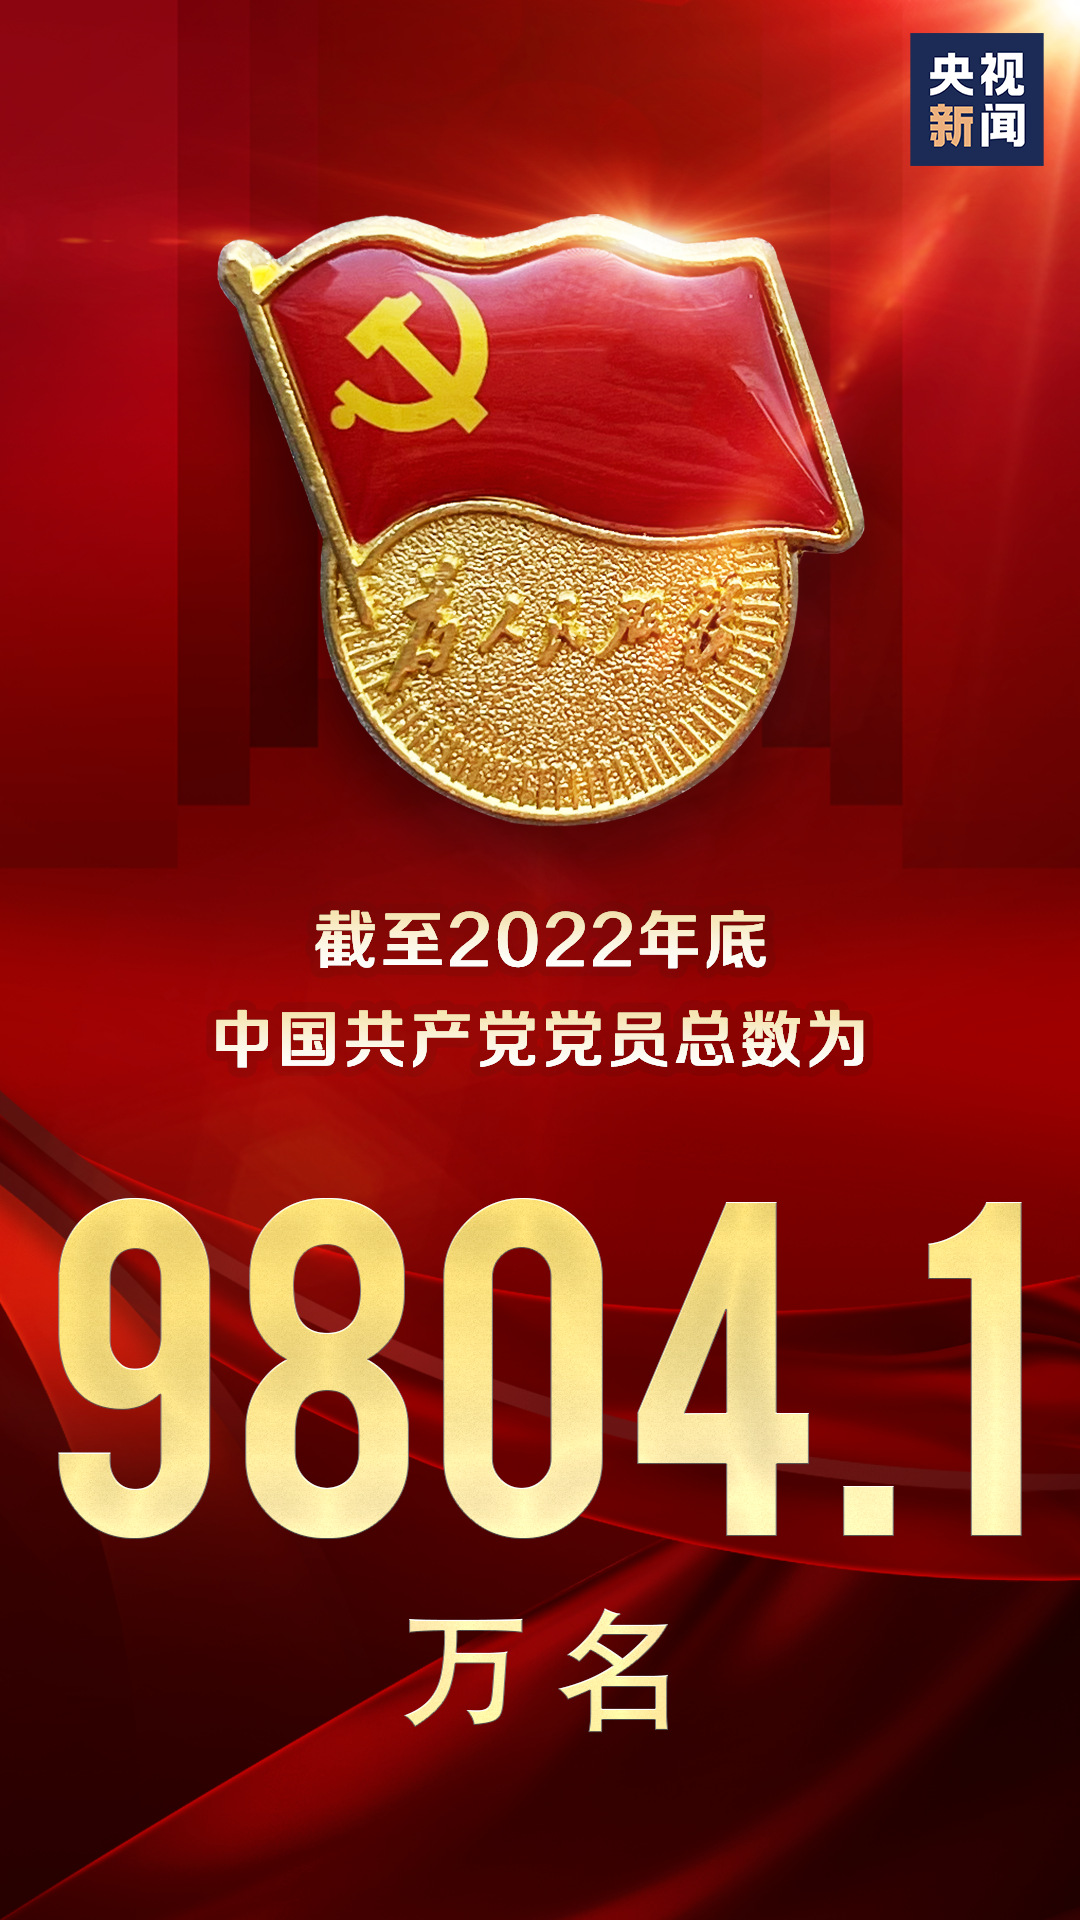 中国共产党党员9804.1万！